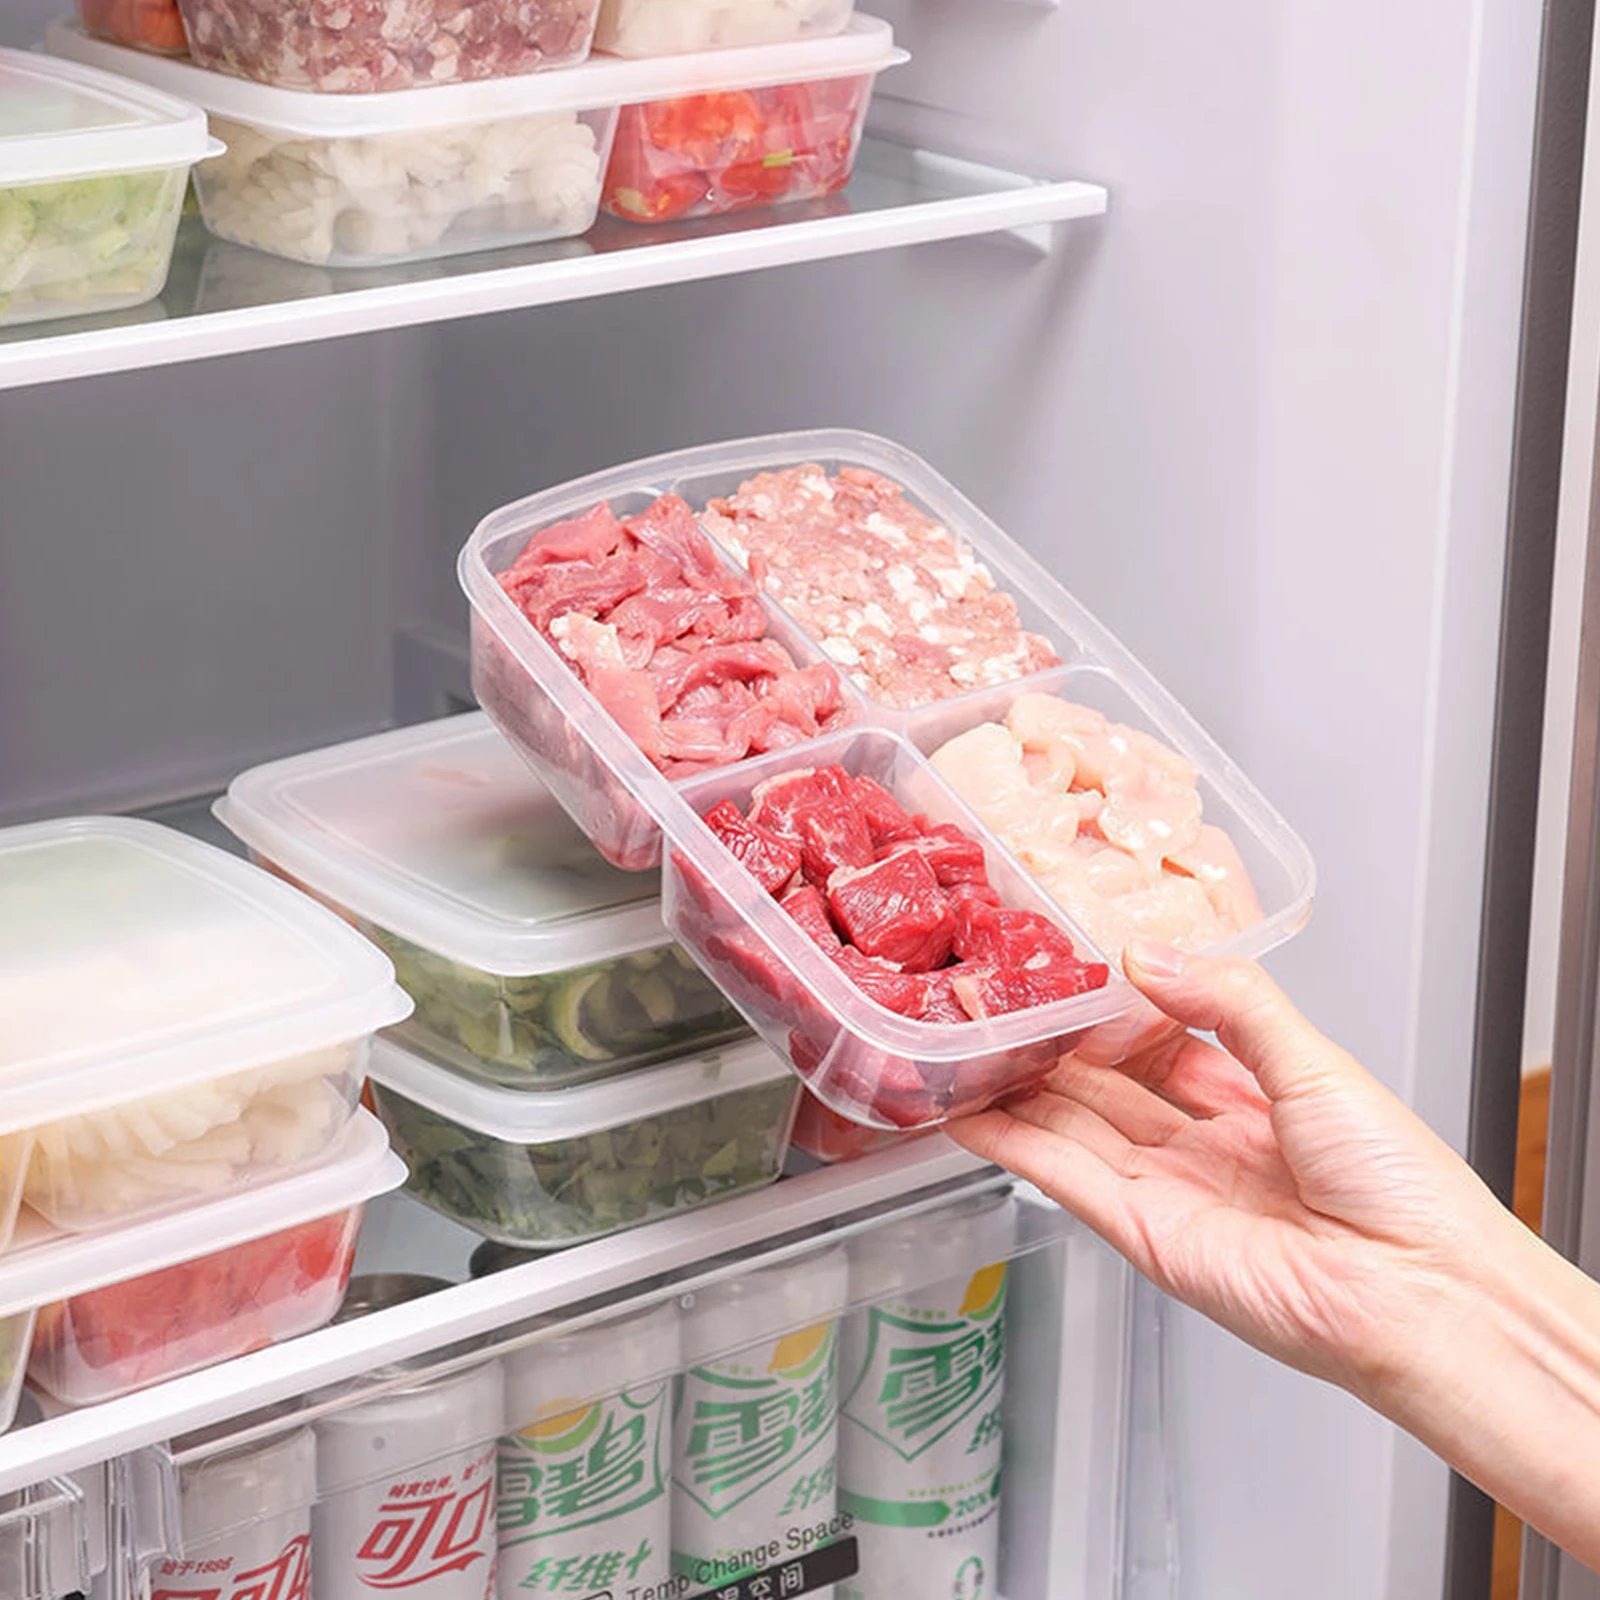 https://ae01.alicdn.com/kf/S9731e13a5e4d4c22b7f4f56962d349e4T/2Pcs-Refrigerator-Frozen-Meat-Four-part-Freezer-Food-Onion-Ginger-Garlic-Storage-Box-Vegetable-Preservation-Fresh.jpg